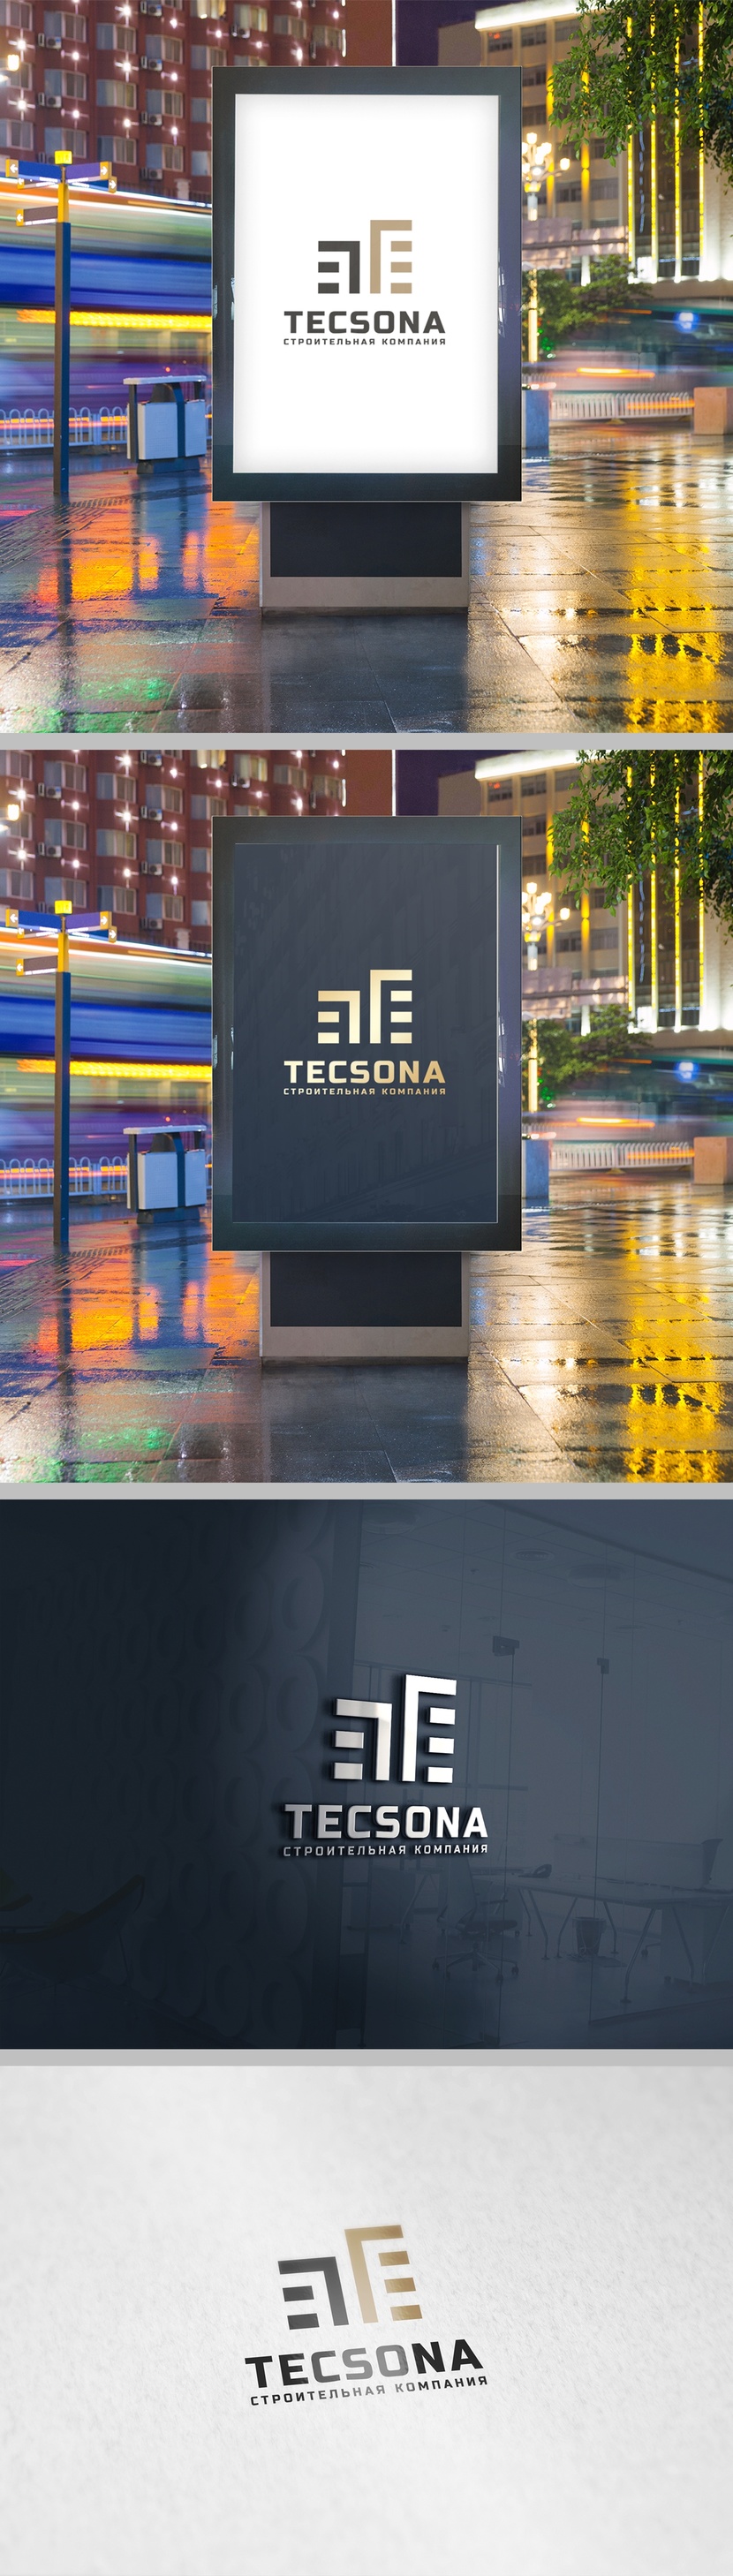 Создать логотип строительной компании Tecsona.